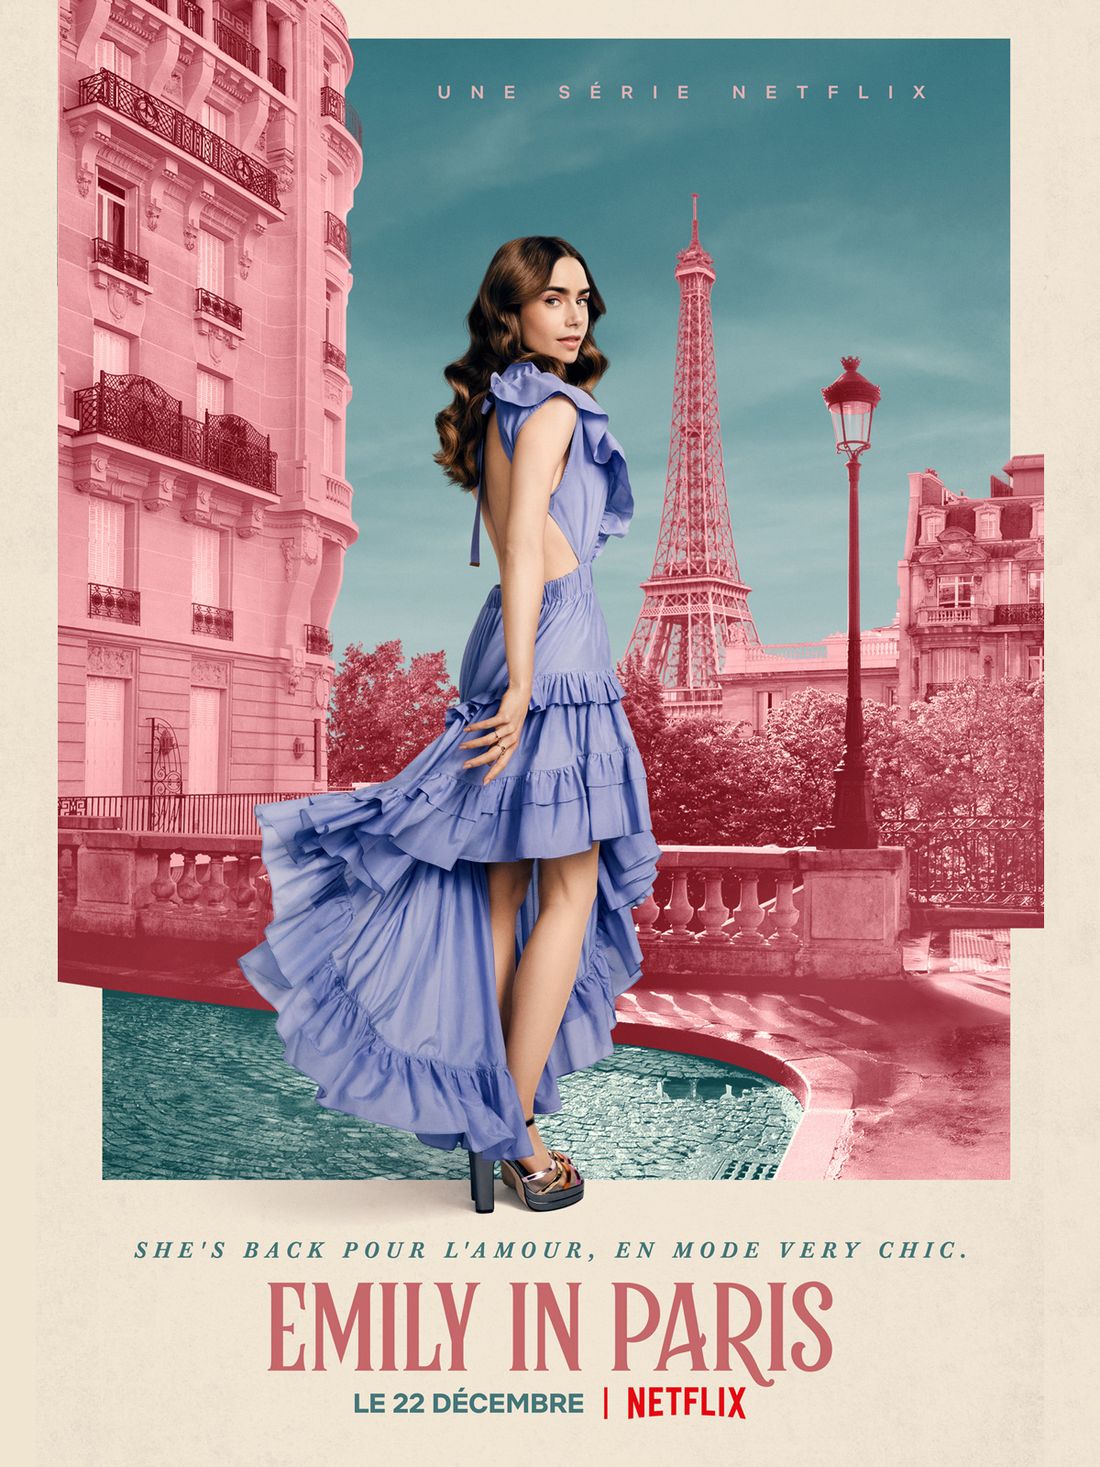 [ SOCIETE / LOISIR ]: Sortie aujourd’hui de la saison 2 de la série Emily in Paris.